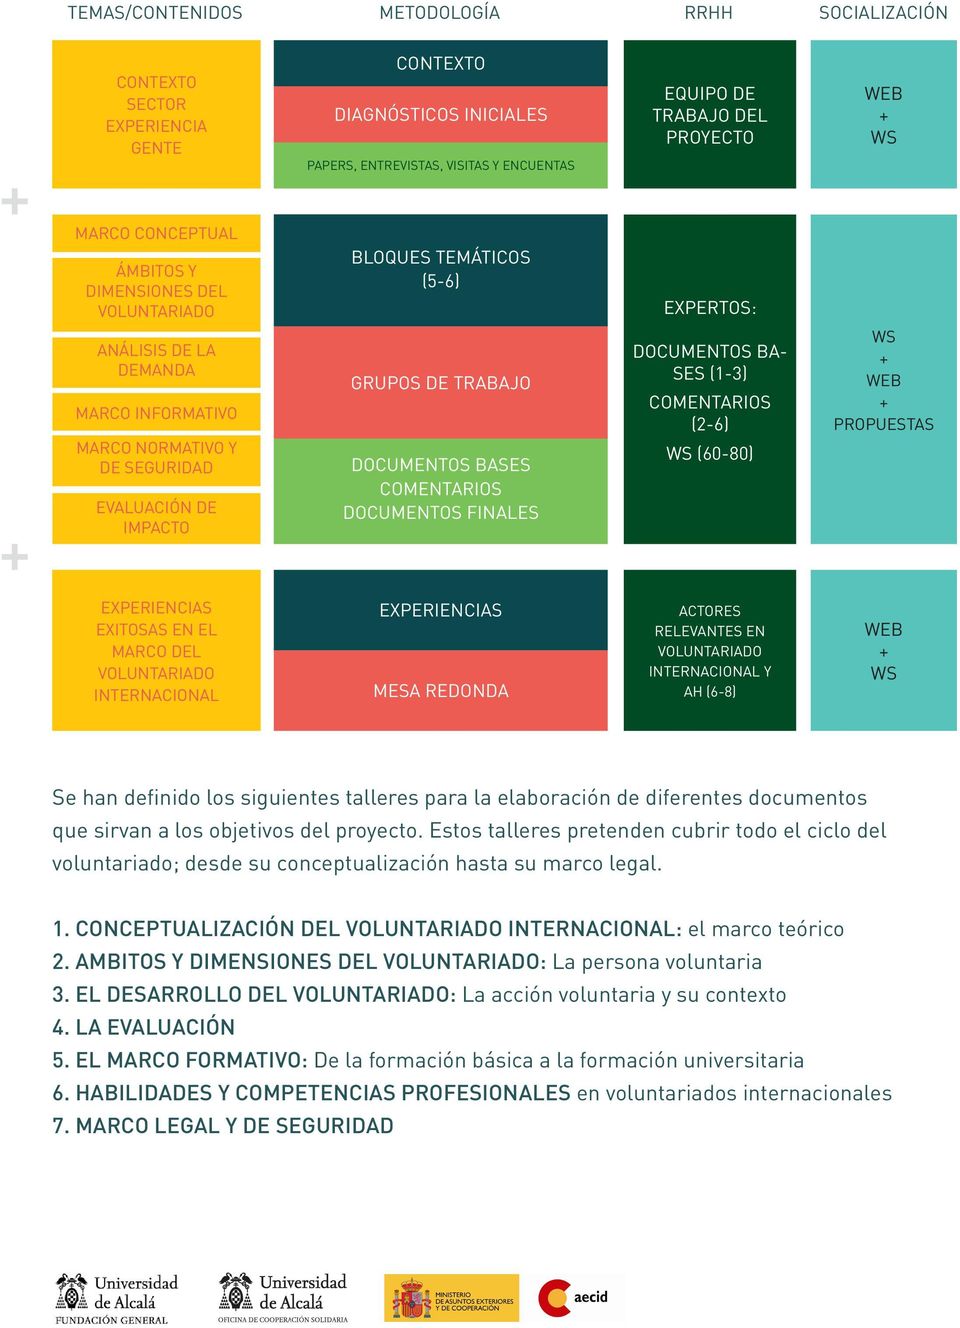 DOCUMENTOS BASES COMENTARIOS DOCUMENTOS FINALES EXPERTOS: DOCUMENTOS BA- SES (1-3) COMENTARIOS (2-6) WS (60-80) WS + WEB + PROPUESTAS EXPERIENCIAS EXITOSAS EN EL MARCO DEL VOLUNTARIADO INTERNACIONAL